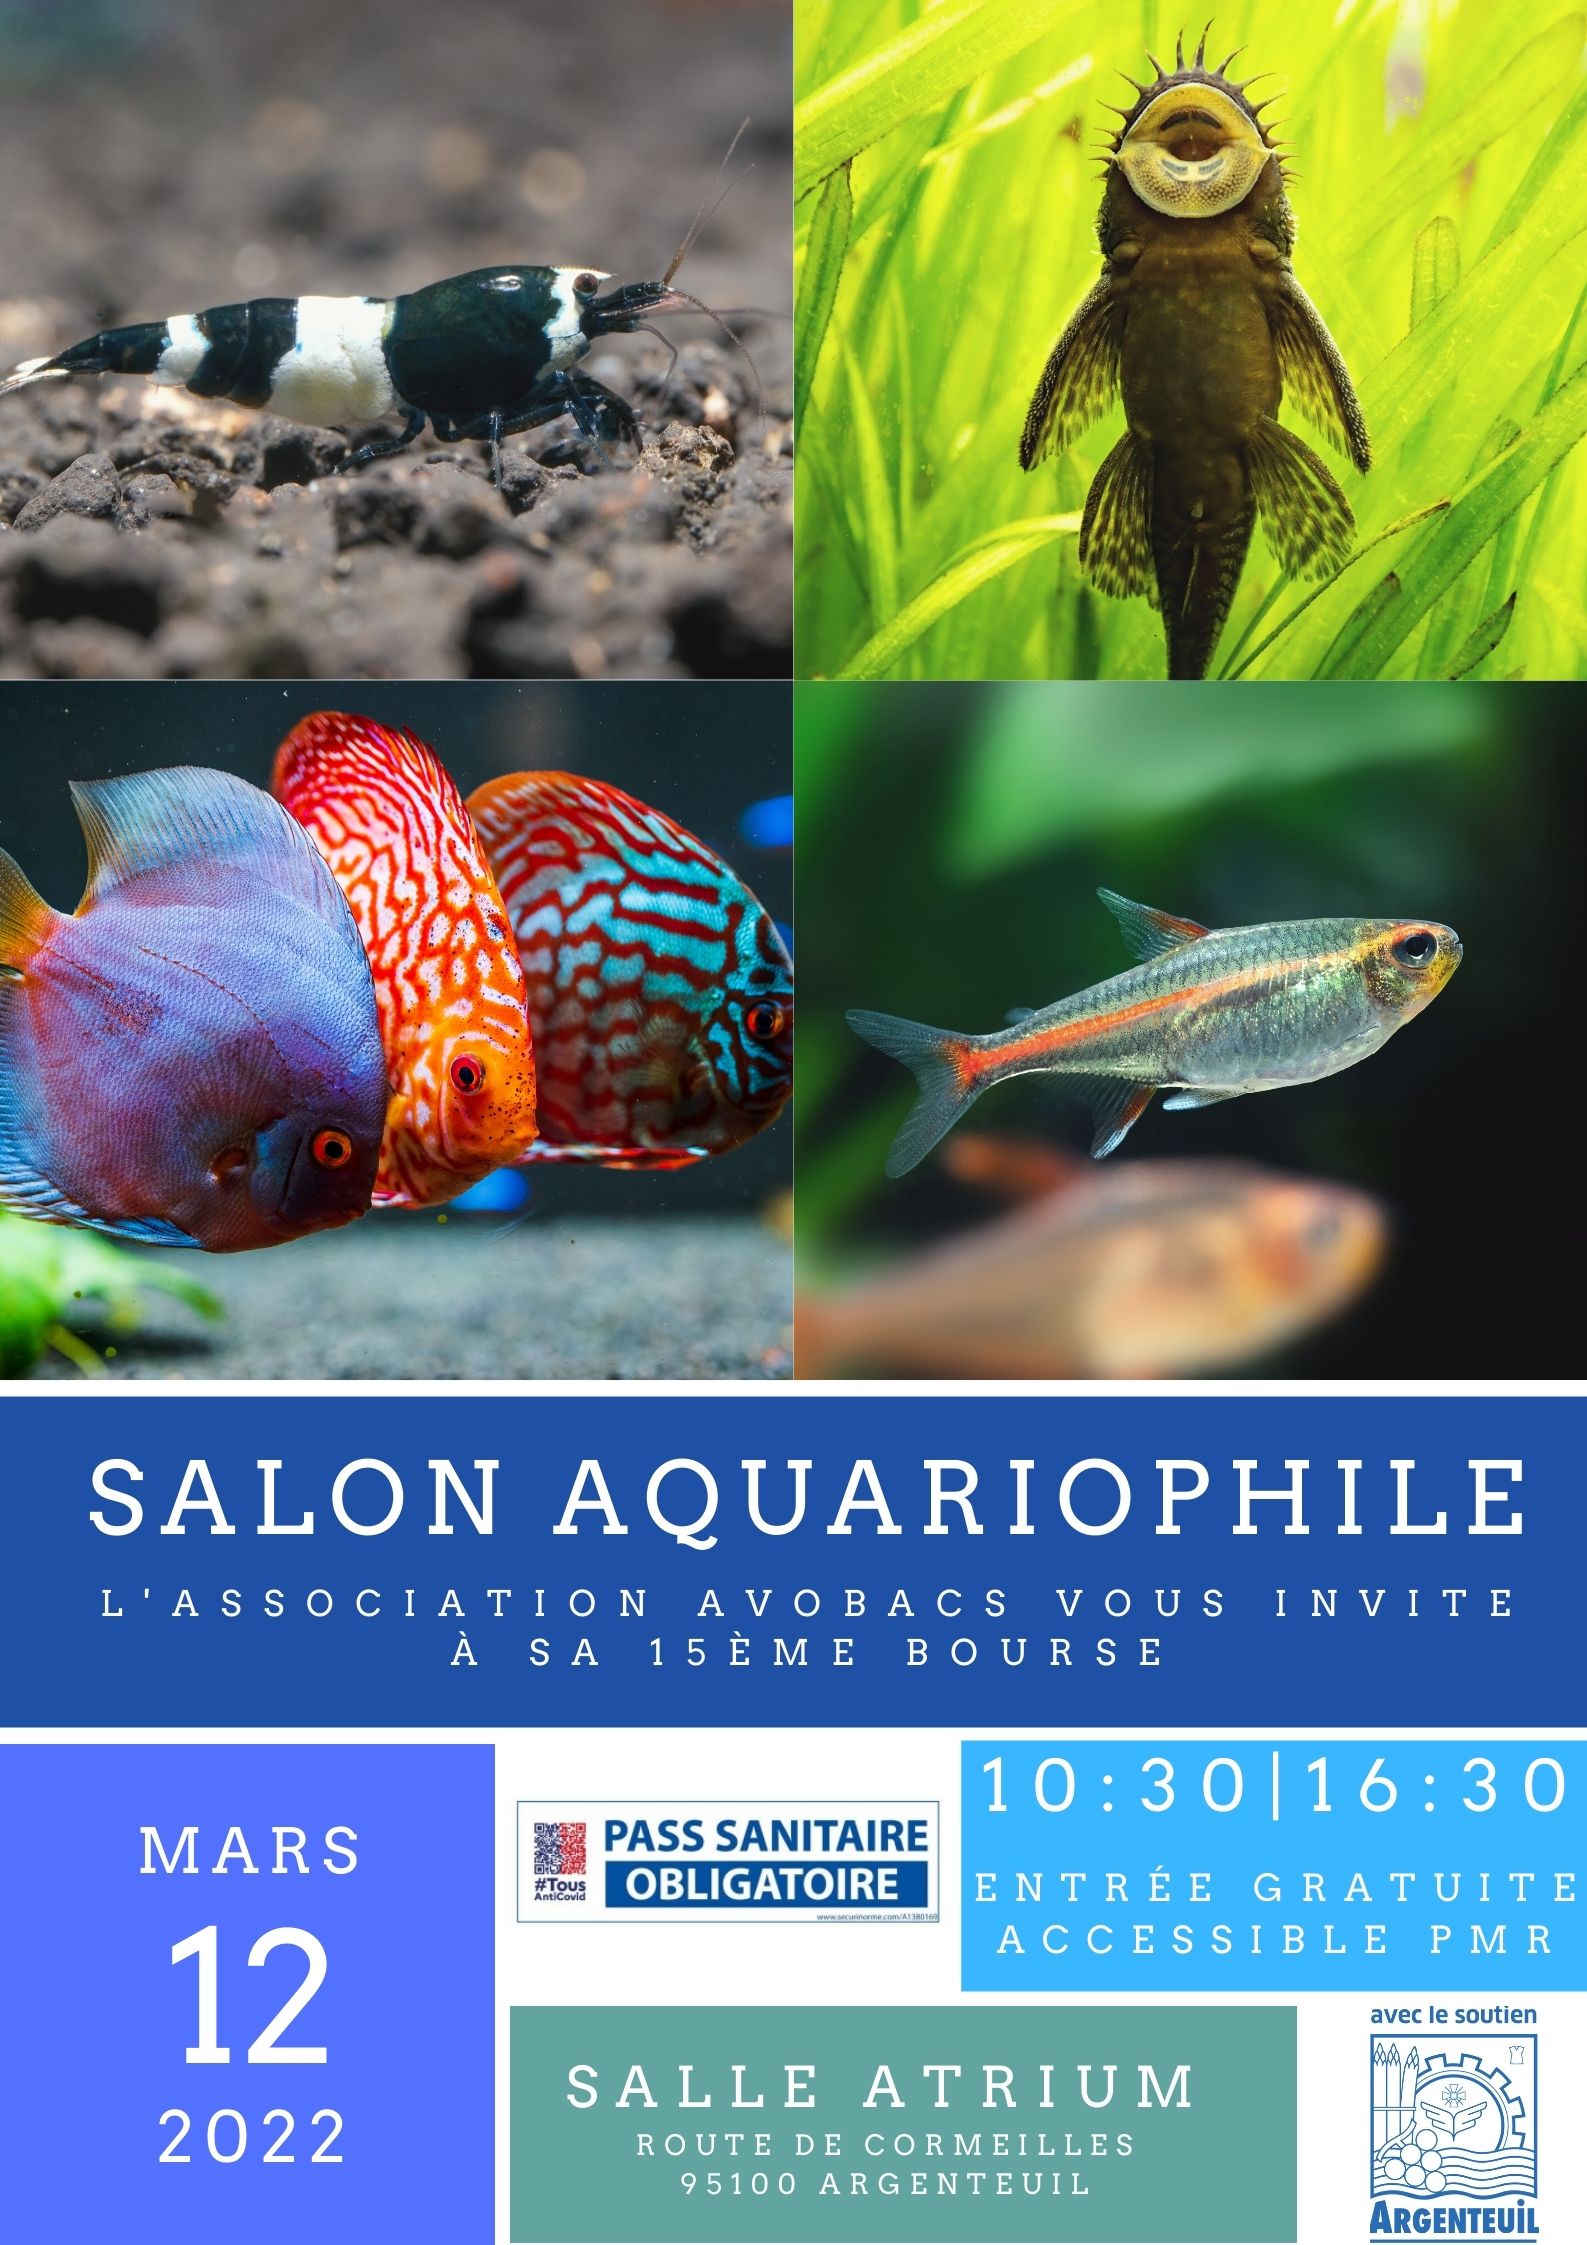 Salon Aquariophile Avobacs Argenteuil (95) le 12 Mars 2022 20220312-Salon-Affiche